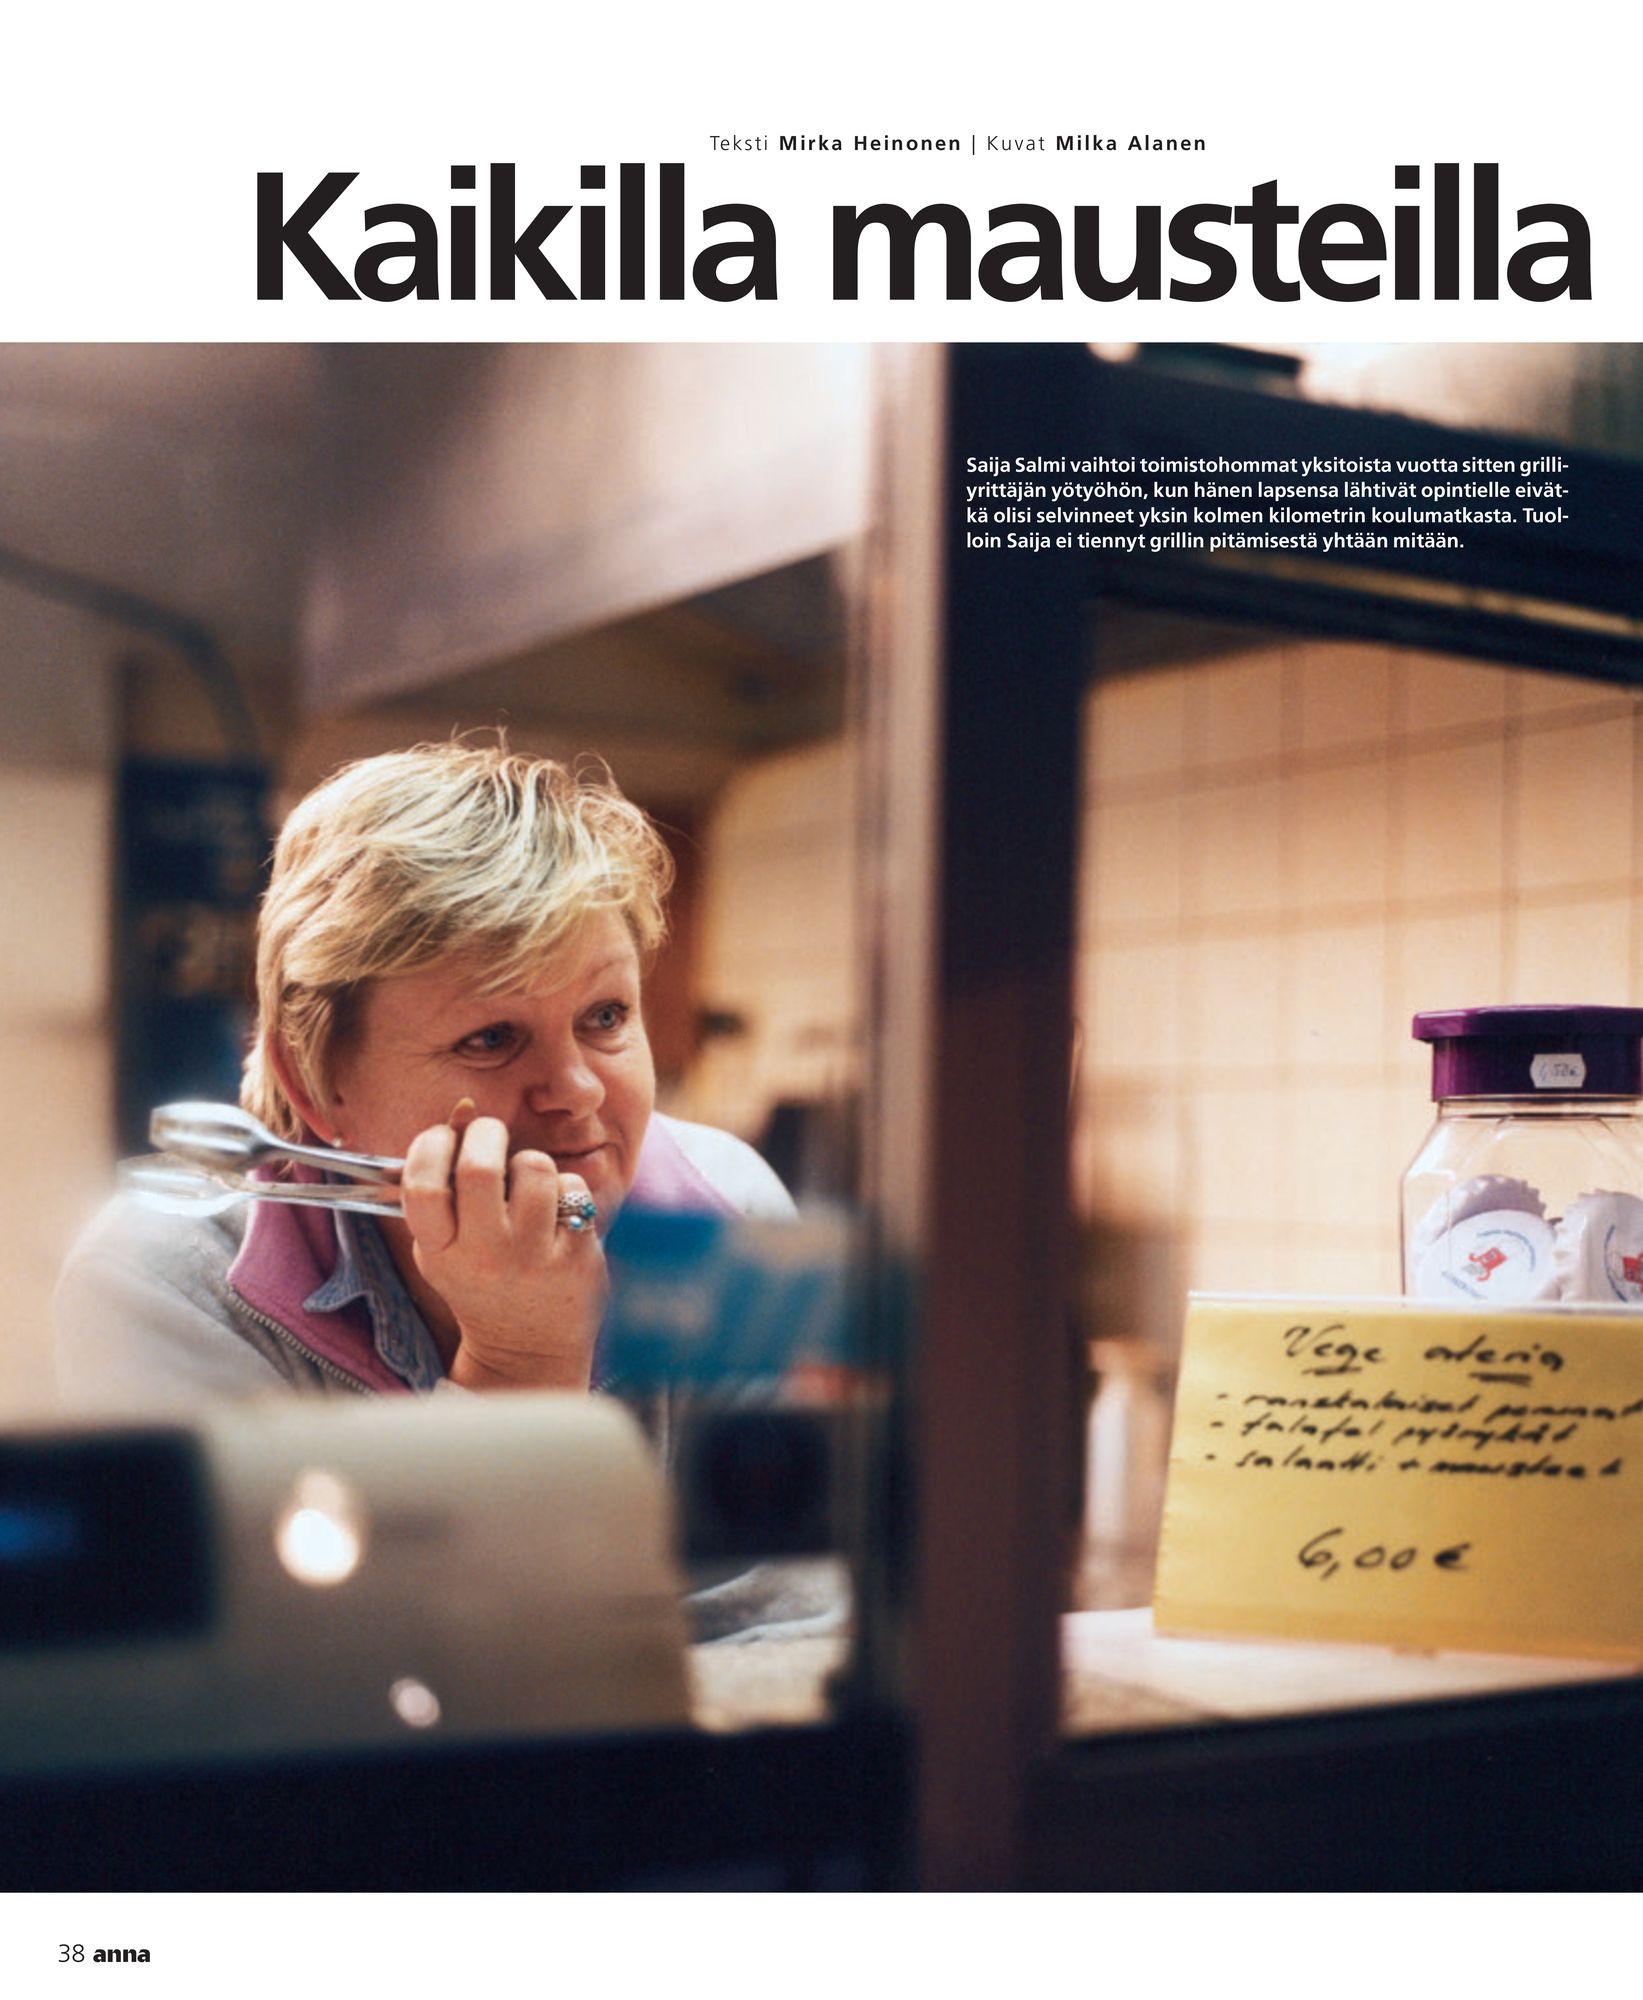 Saija Rantaharju osasi ennustaa, mitä ihmiset tilaavat grilliltä. Anna-lehti teki hänen yrittäjyydestään jutun vuonna 2005. © Annan arkisto